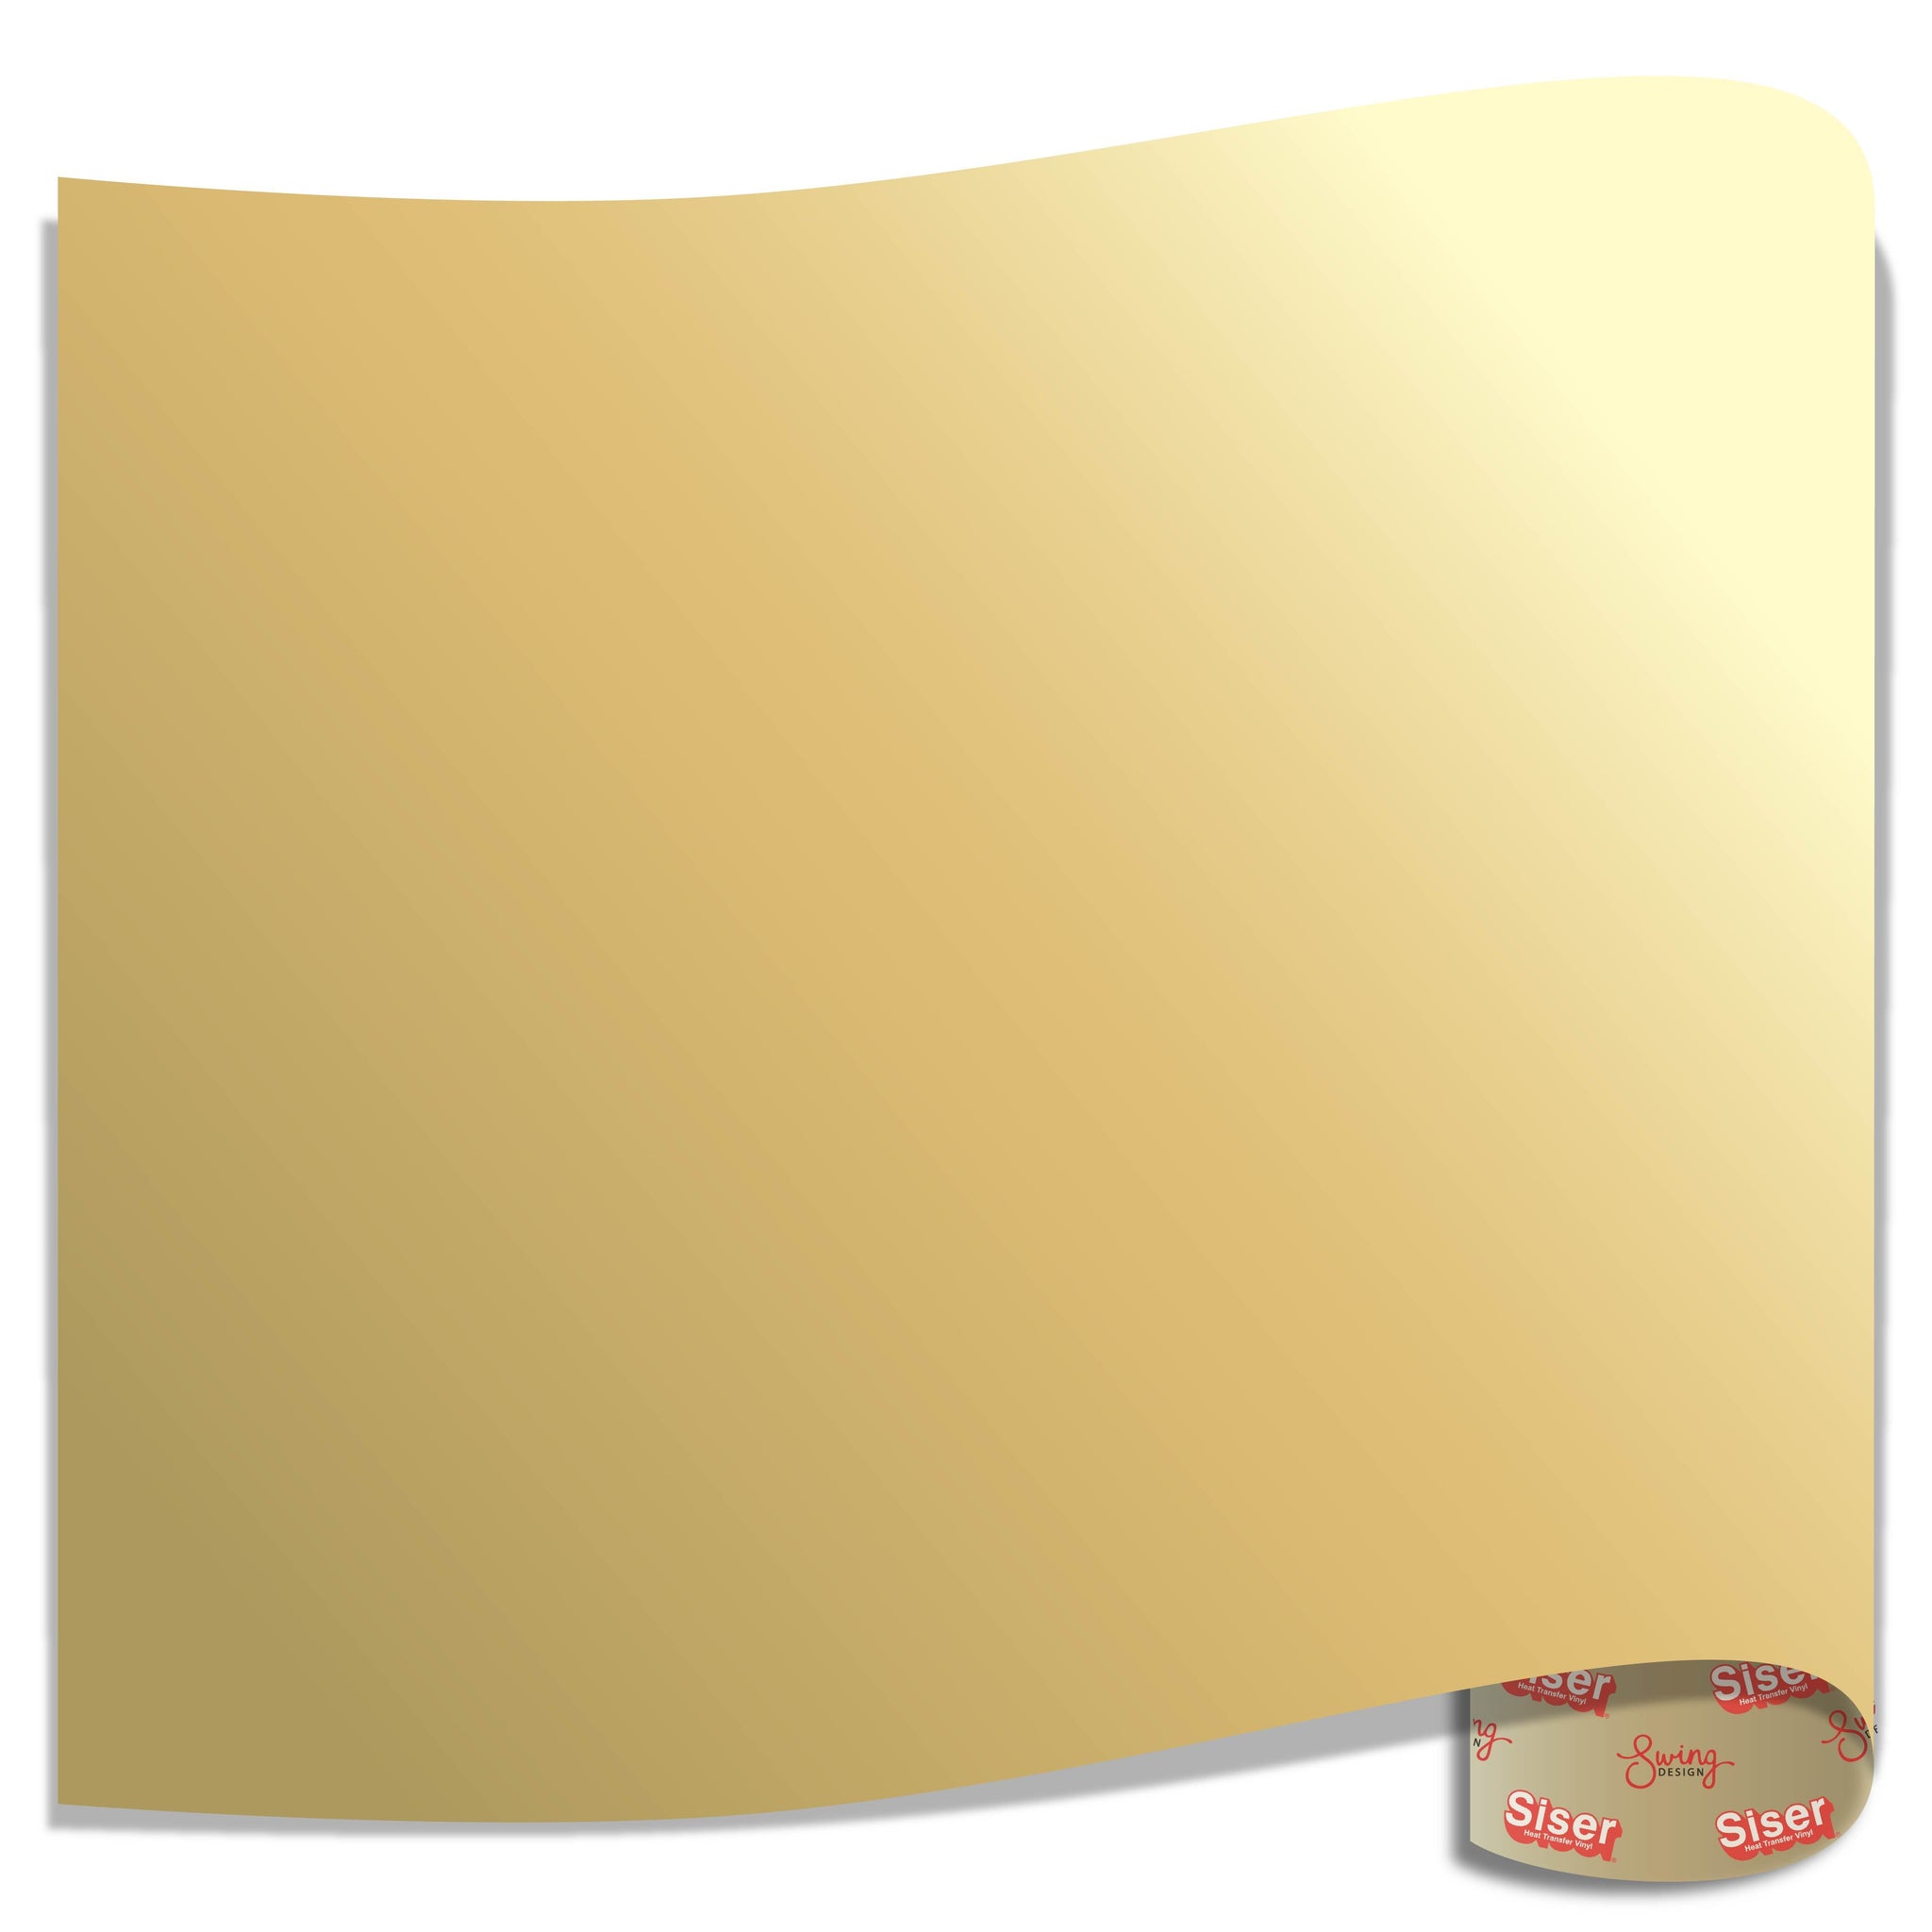 Siser EasyWeed Heat Transfer Vinyl (HTV) - Vegas Gold - 15 in x 12 inch Sheet